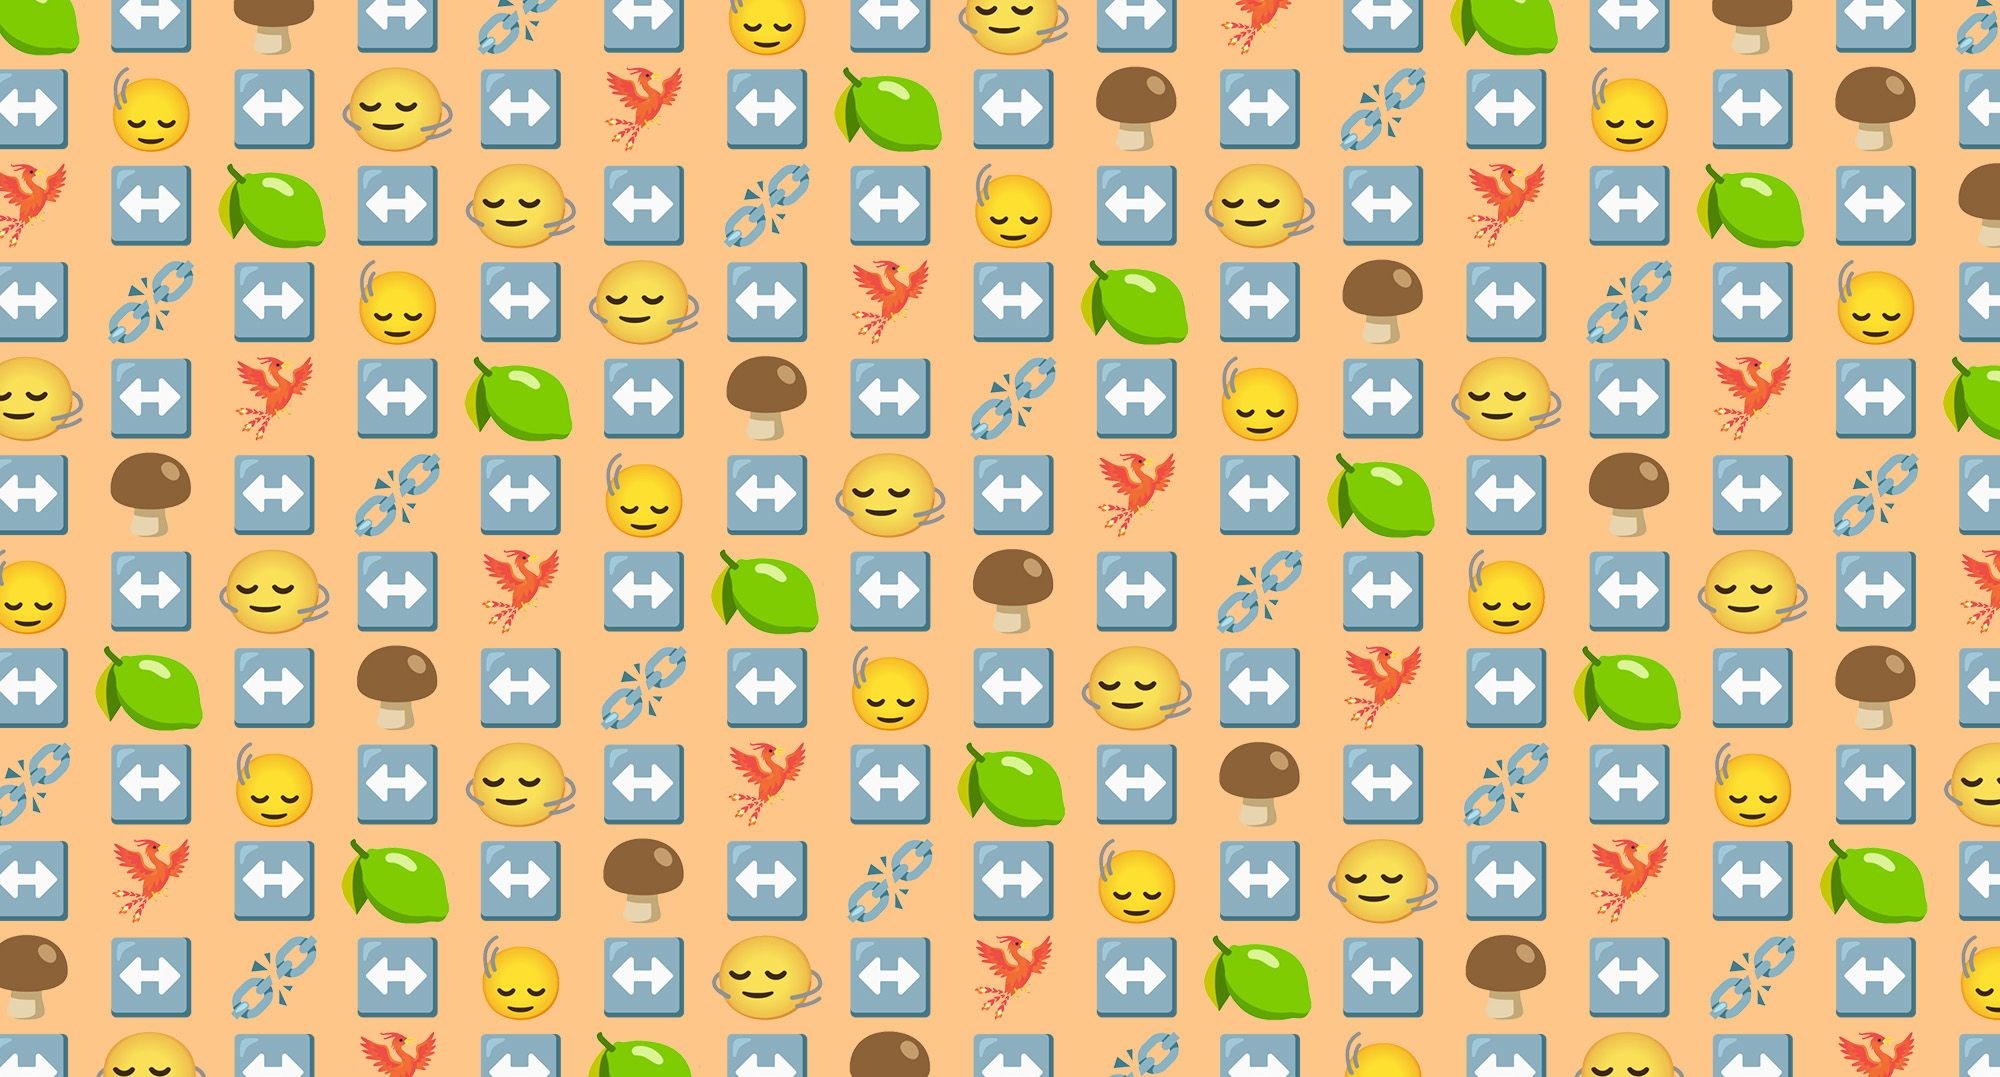 2023'te kullanıma sunulması planlanan 6 yeni emoji ortaya çıktı